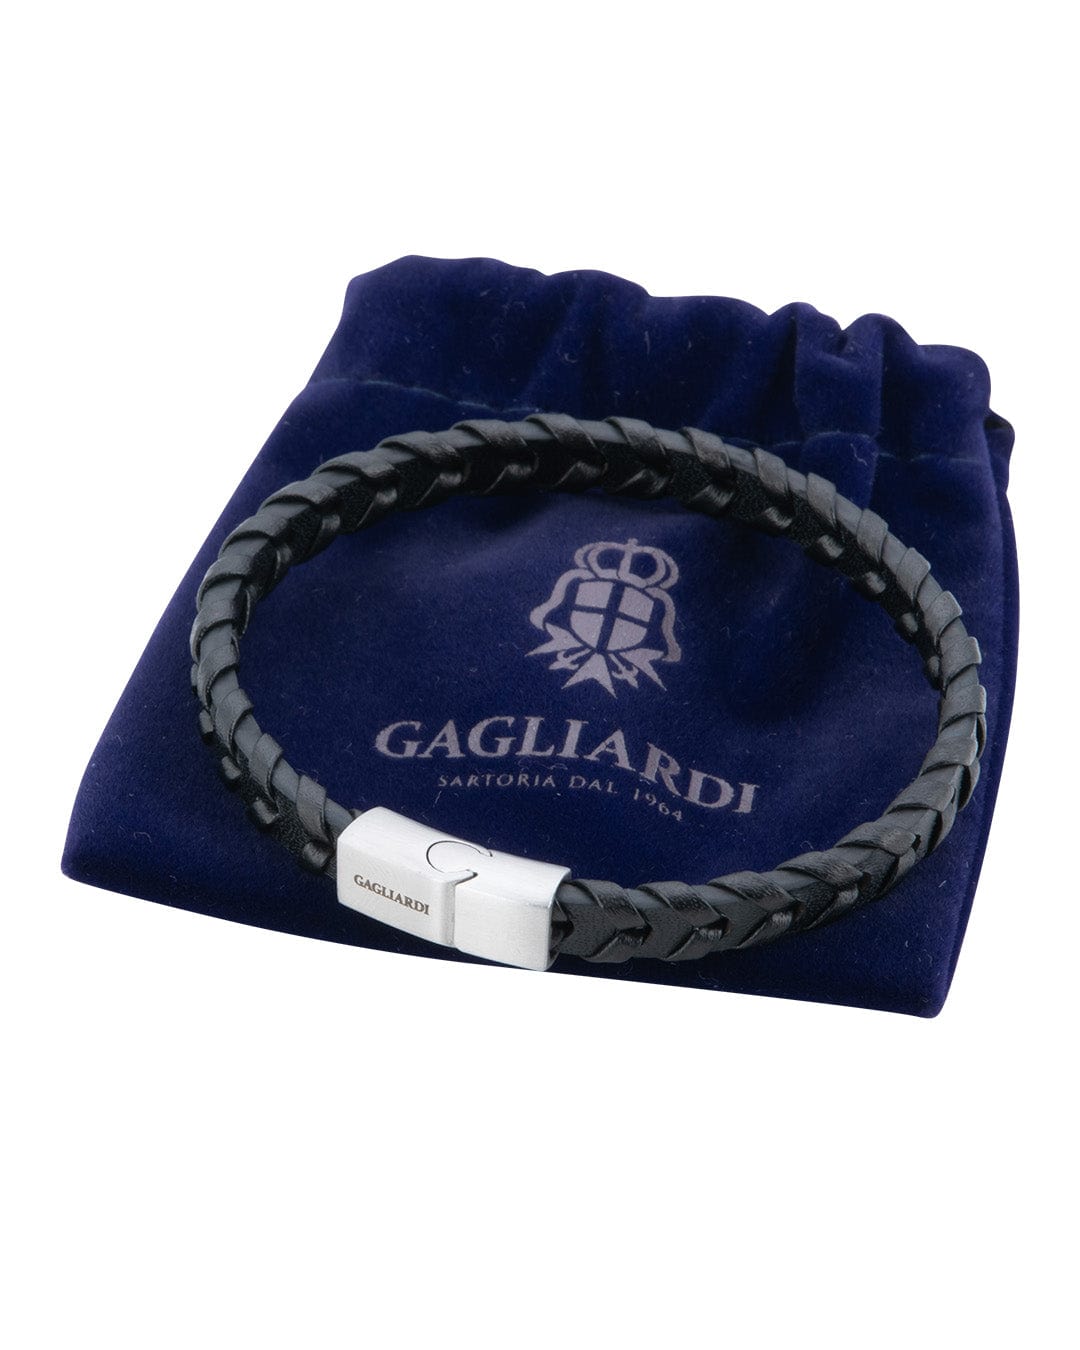 Gagliardi Bracelets Gagliardi Black Braided Leather Bracelet With Brushed Steel Clasp